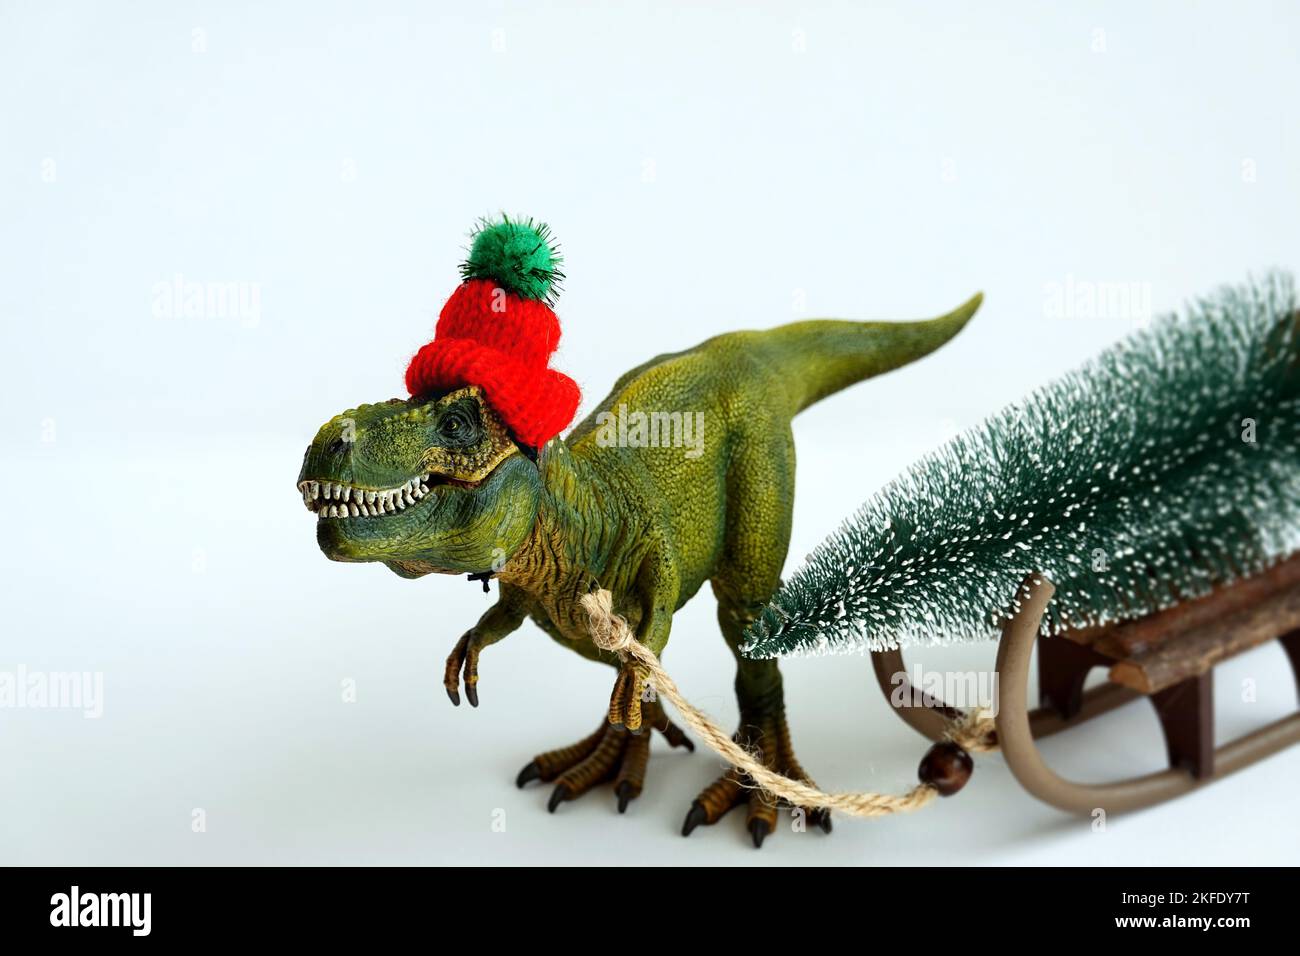 Noël, Impression Graphique De Dinosaure De Dessin Animé De Fête